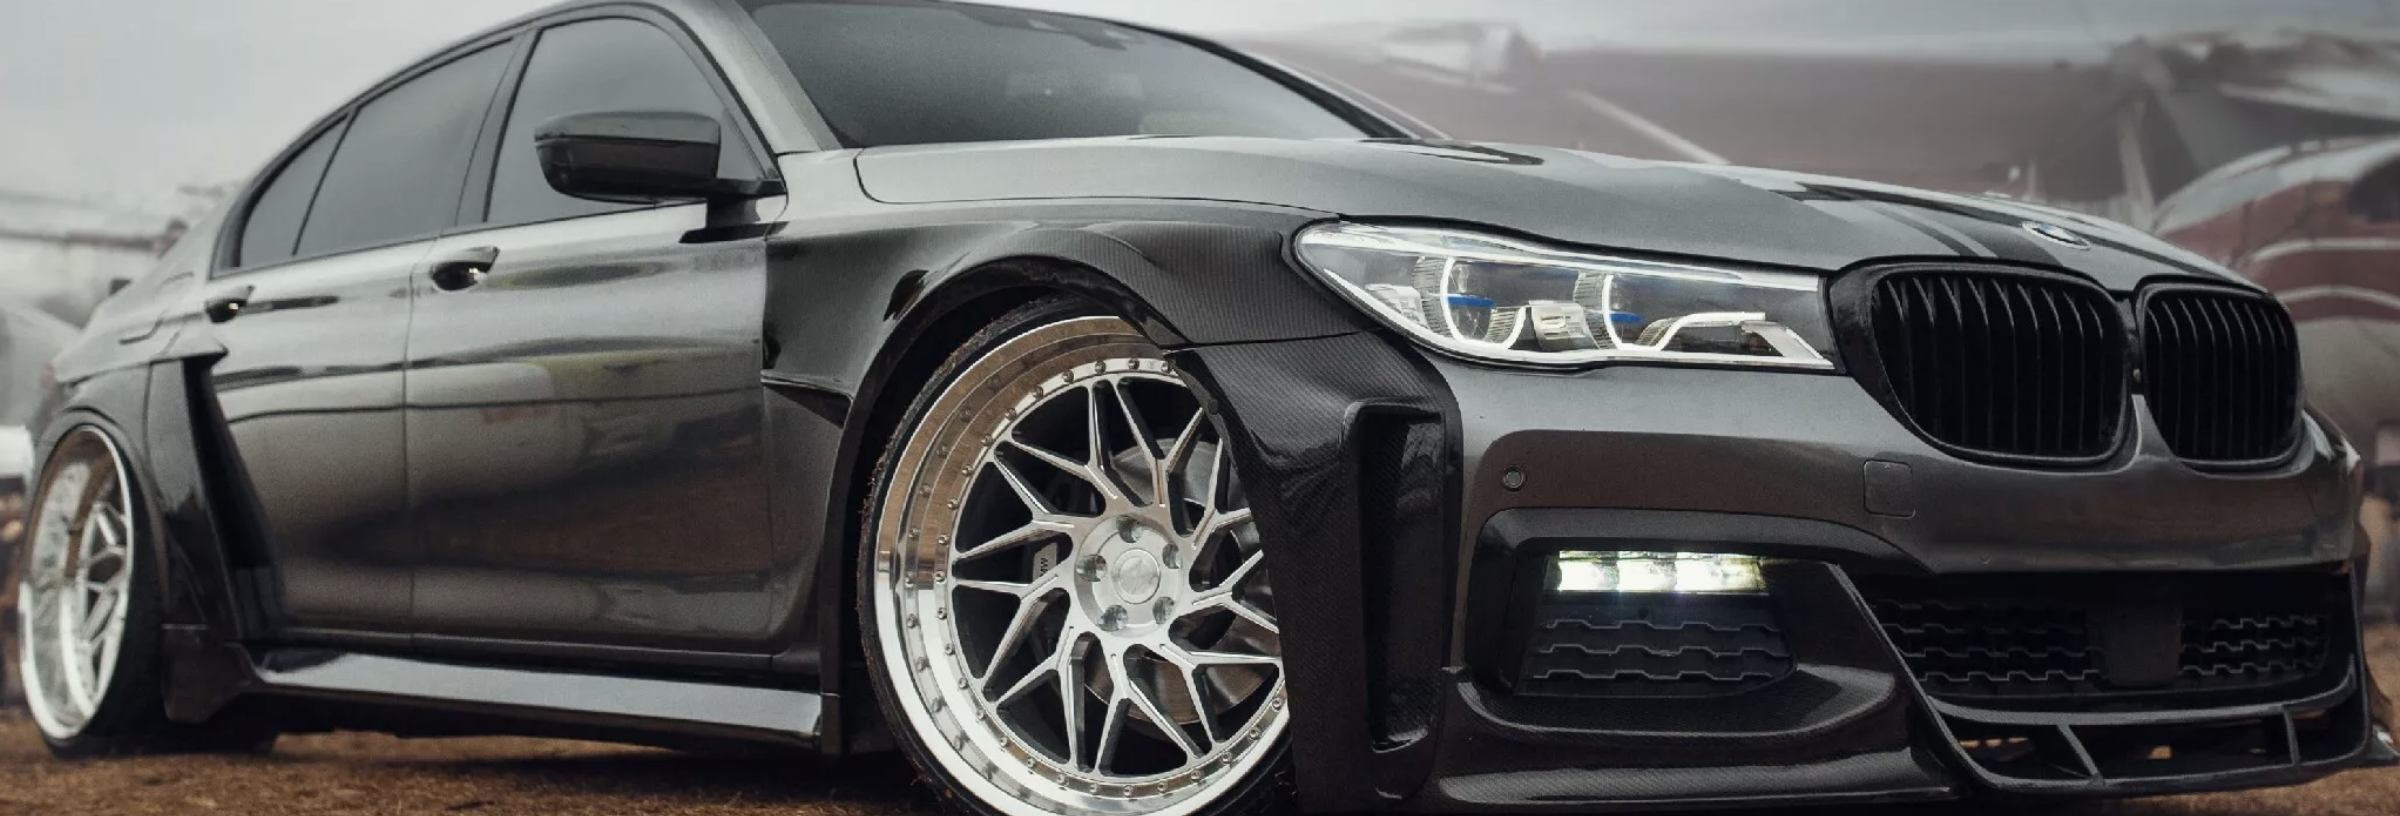 BMW G11 7-Series зазнає вражаючої трансформації завдяки карбоновому обважуванню кузова